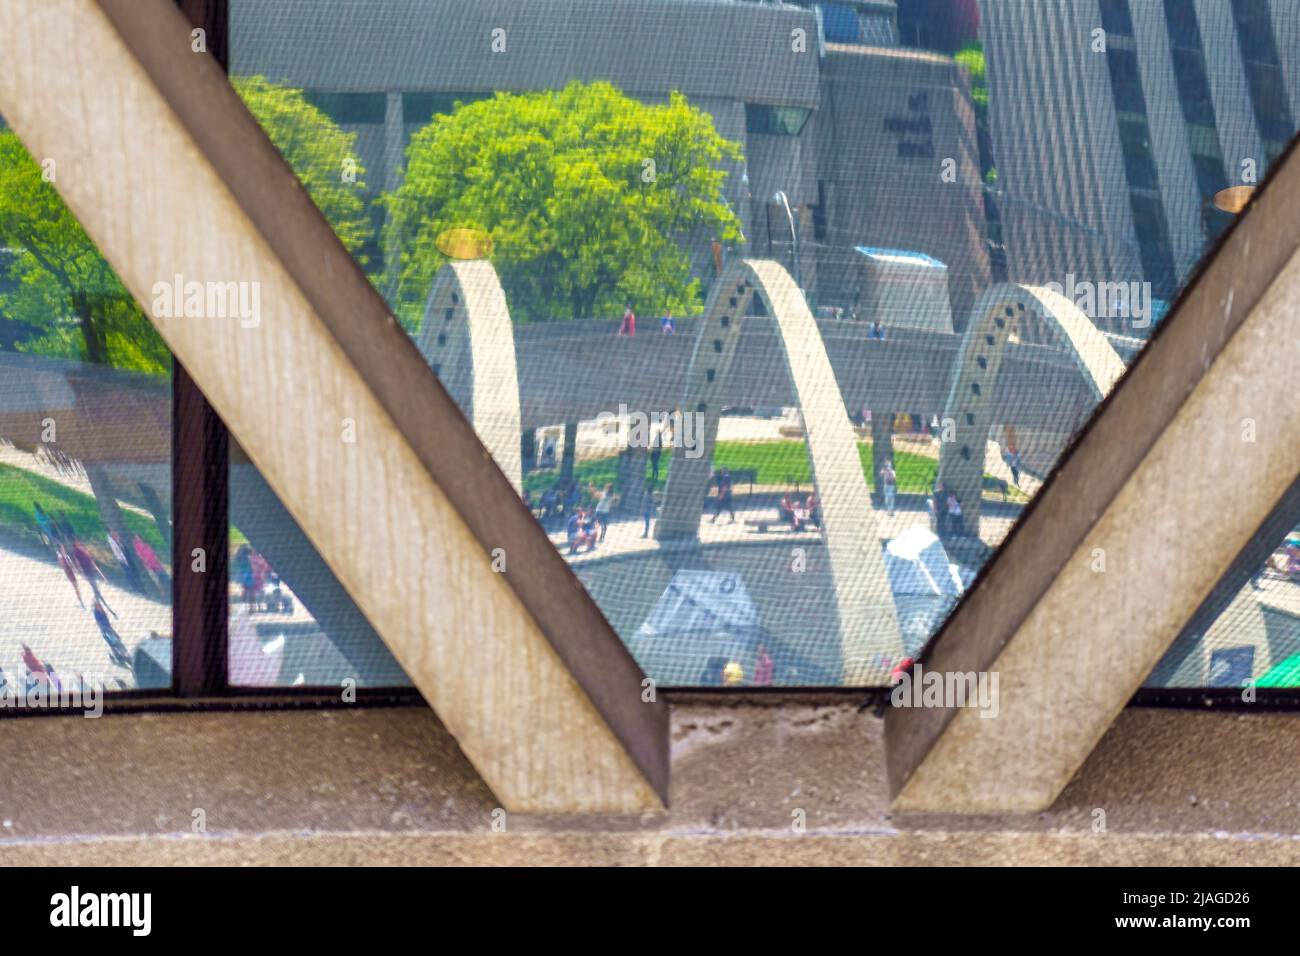 Spiegelung der Freiheitsarchen in einem Glas des Neuen Rathauses. Beide Sehenswürdigkeiten befinden sich auf dem Nathan Phillips Square. Stockfoto